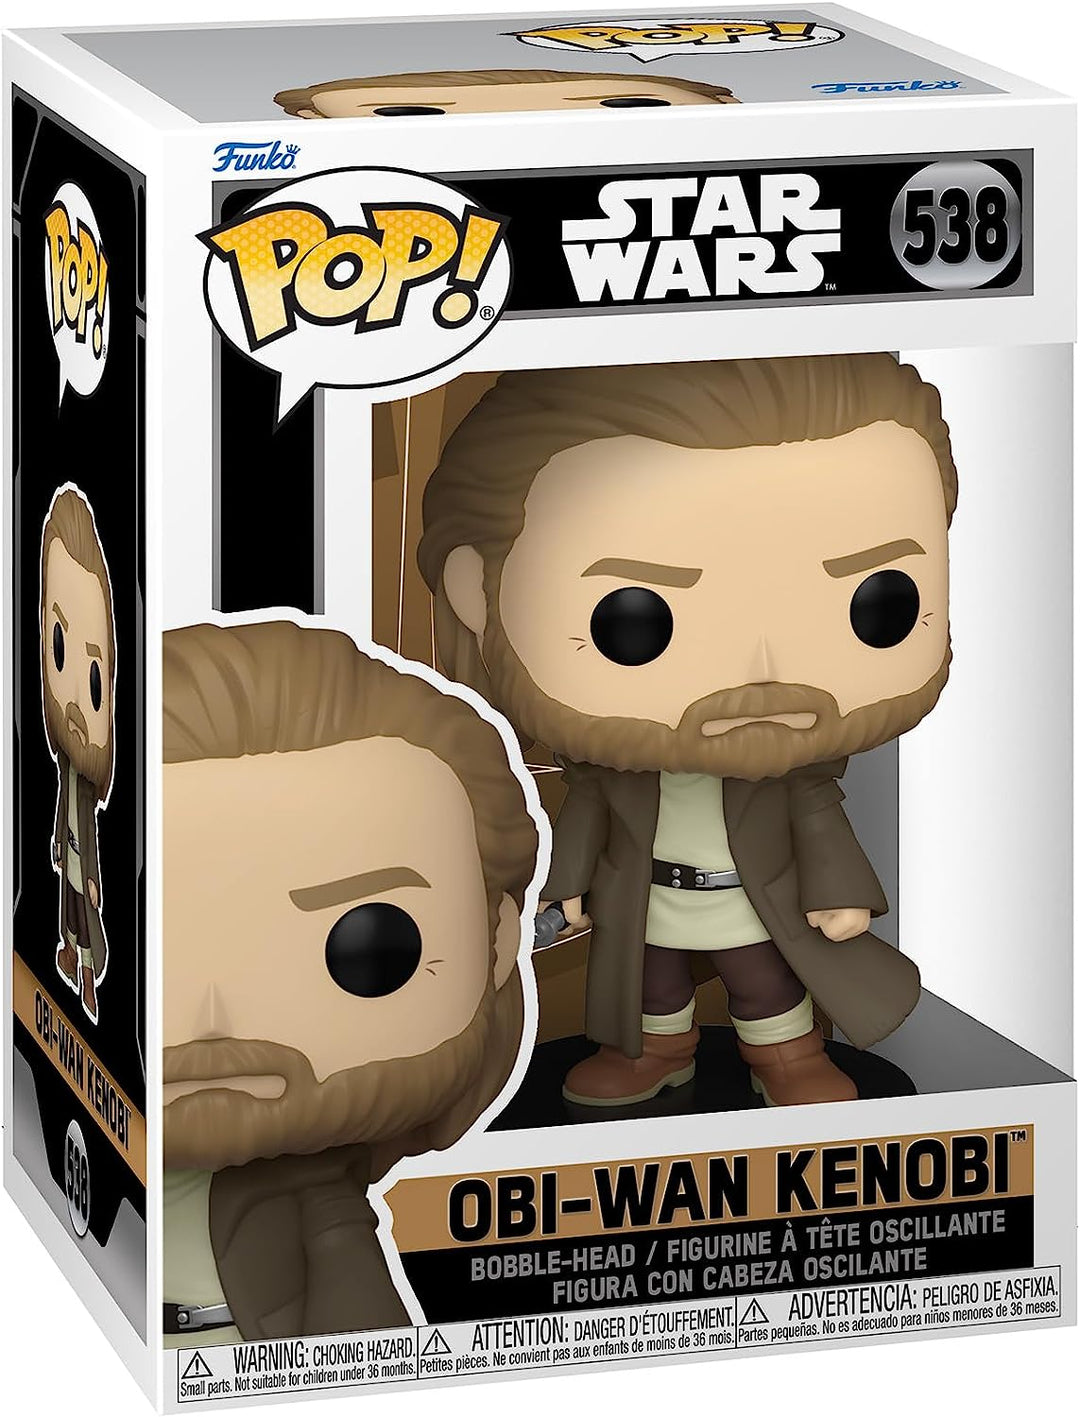 Star Wars Obi-Wan Kenobi Funko POP #538